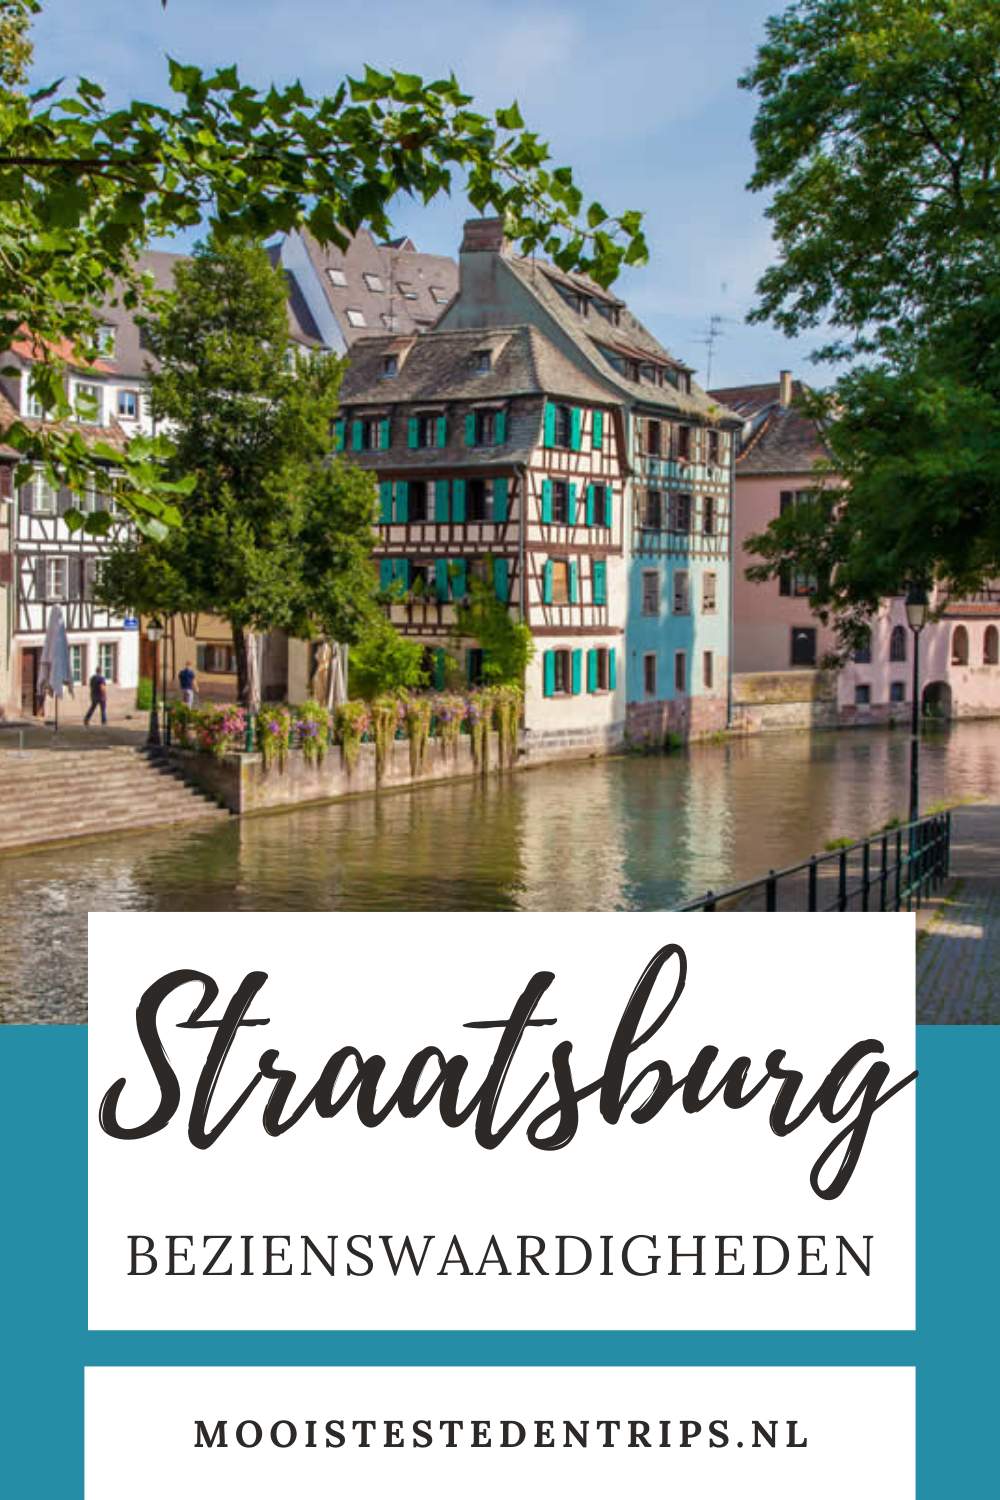 Bezienswaardigheden Straatsburg: de leukste dingen om te doen in Straatsburg | Mooistestedentrips.nl